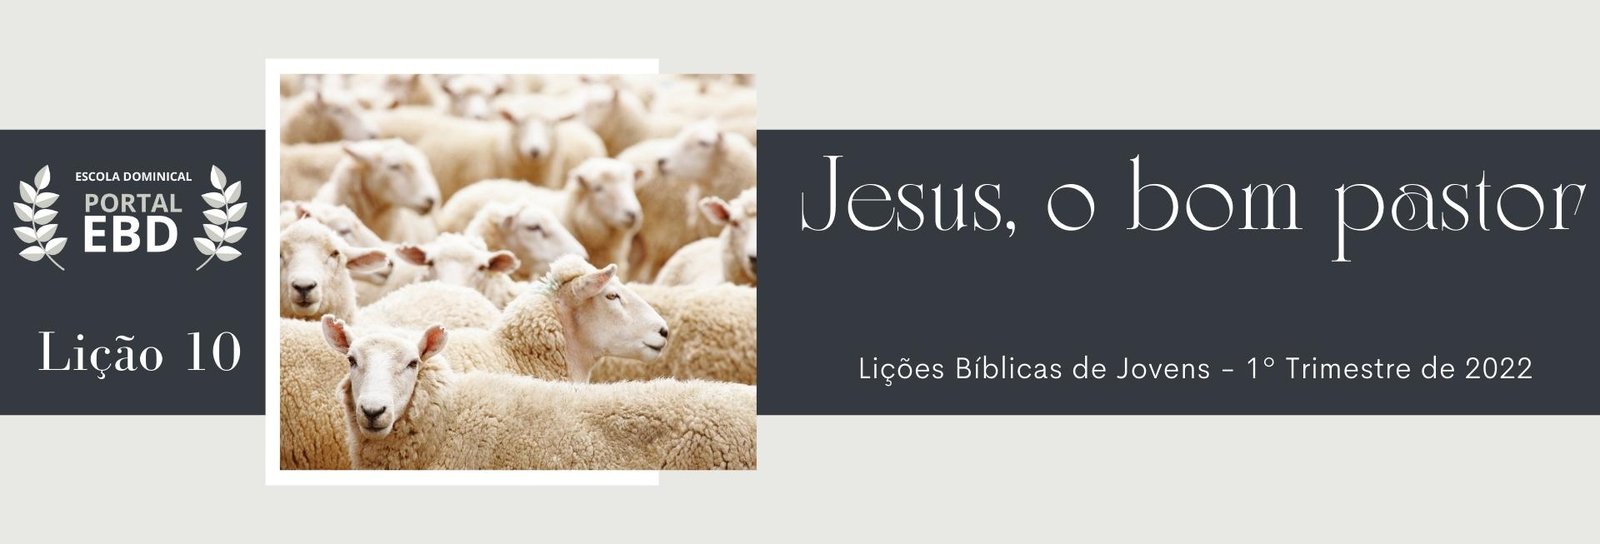 Lição 10 - Jesus, o Bom Pastor II